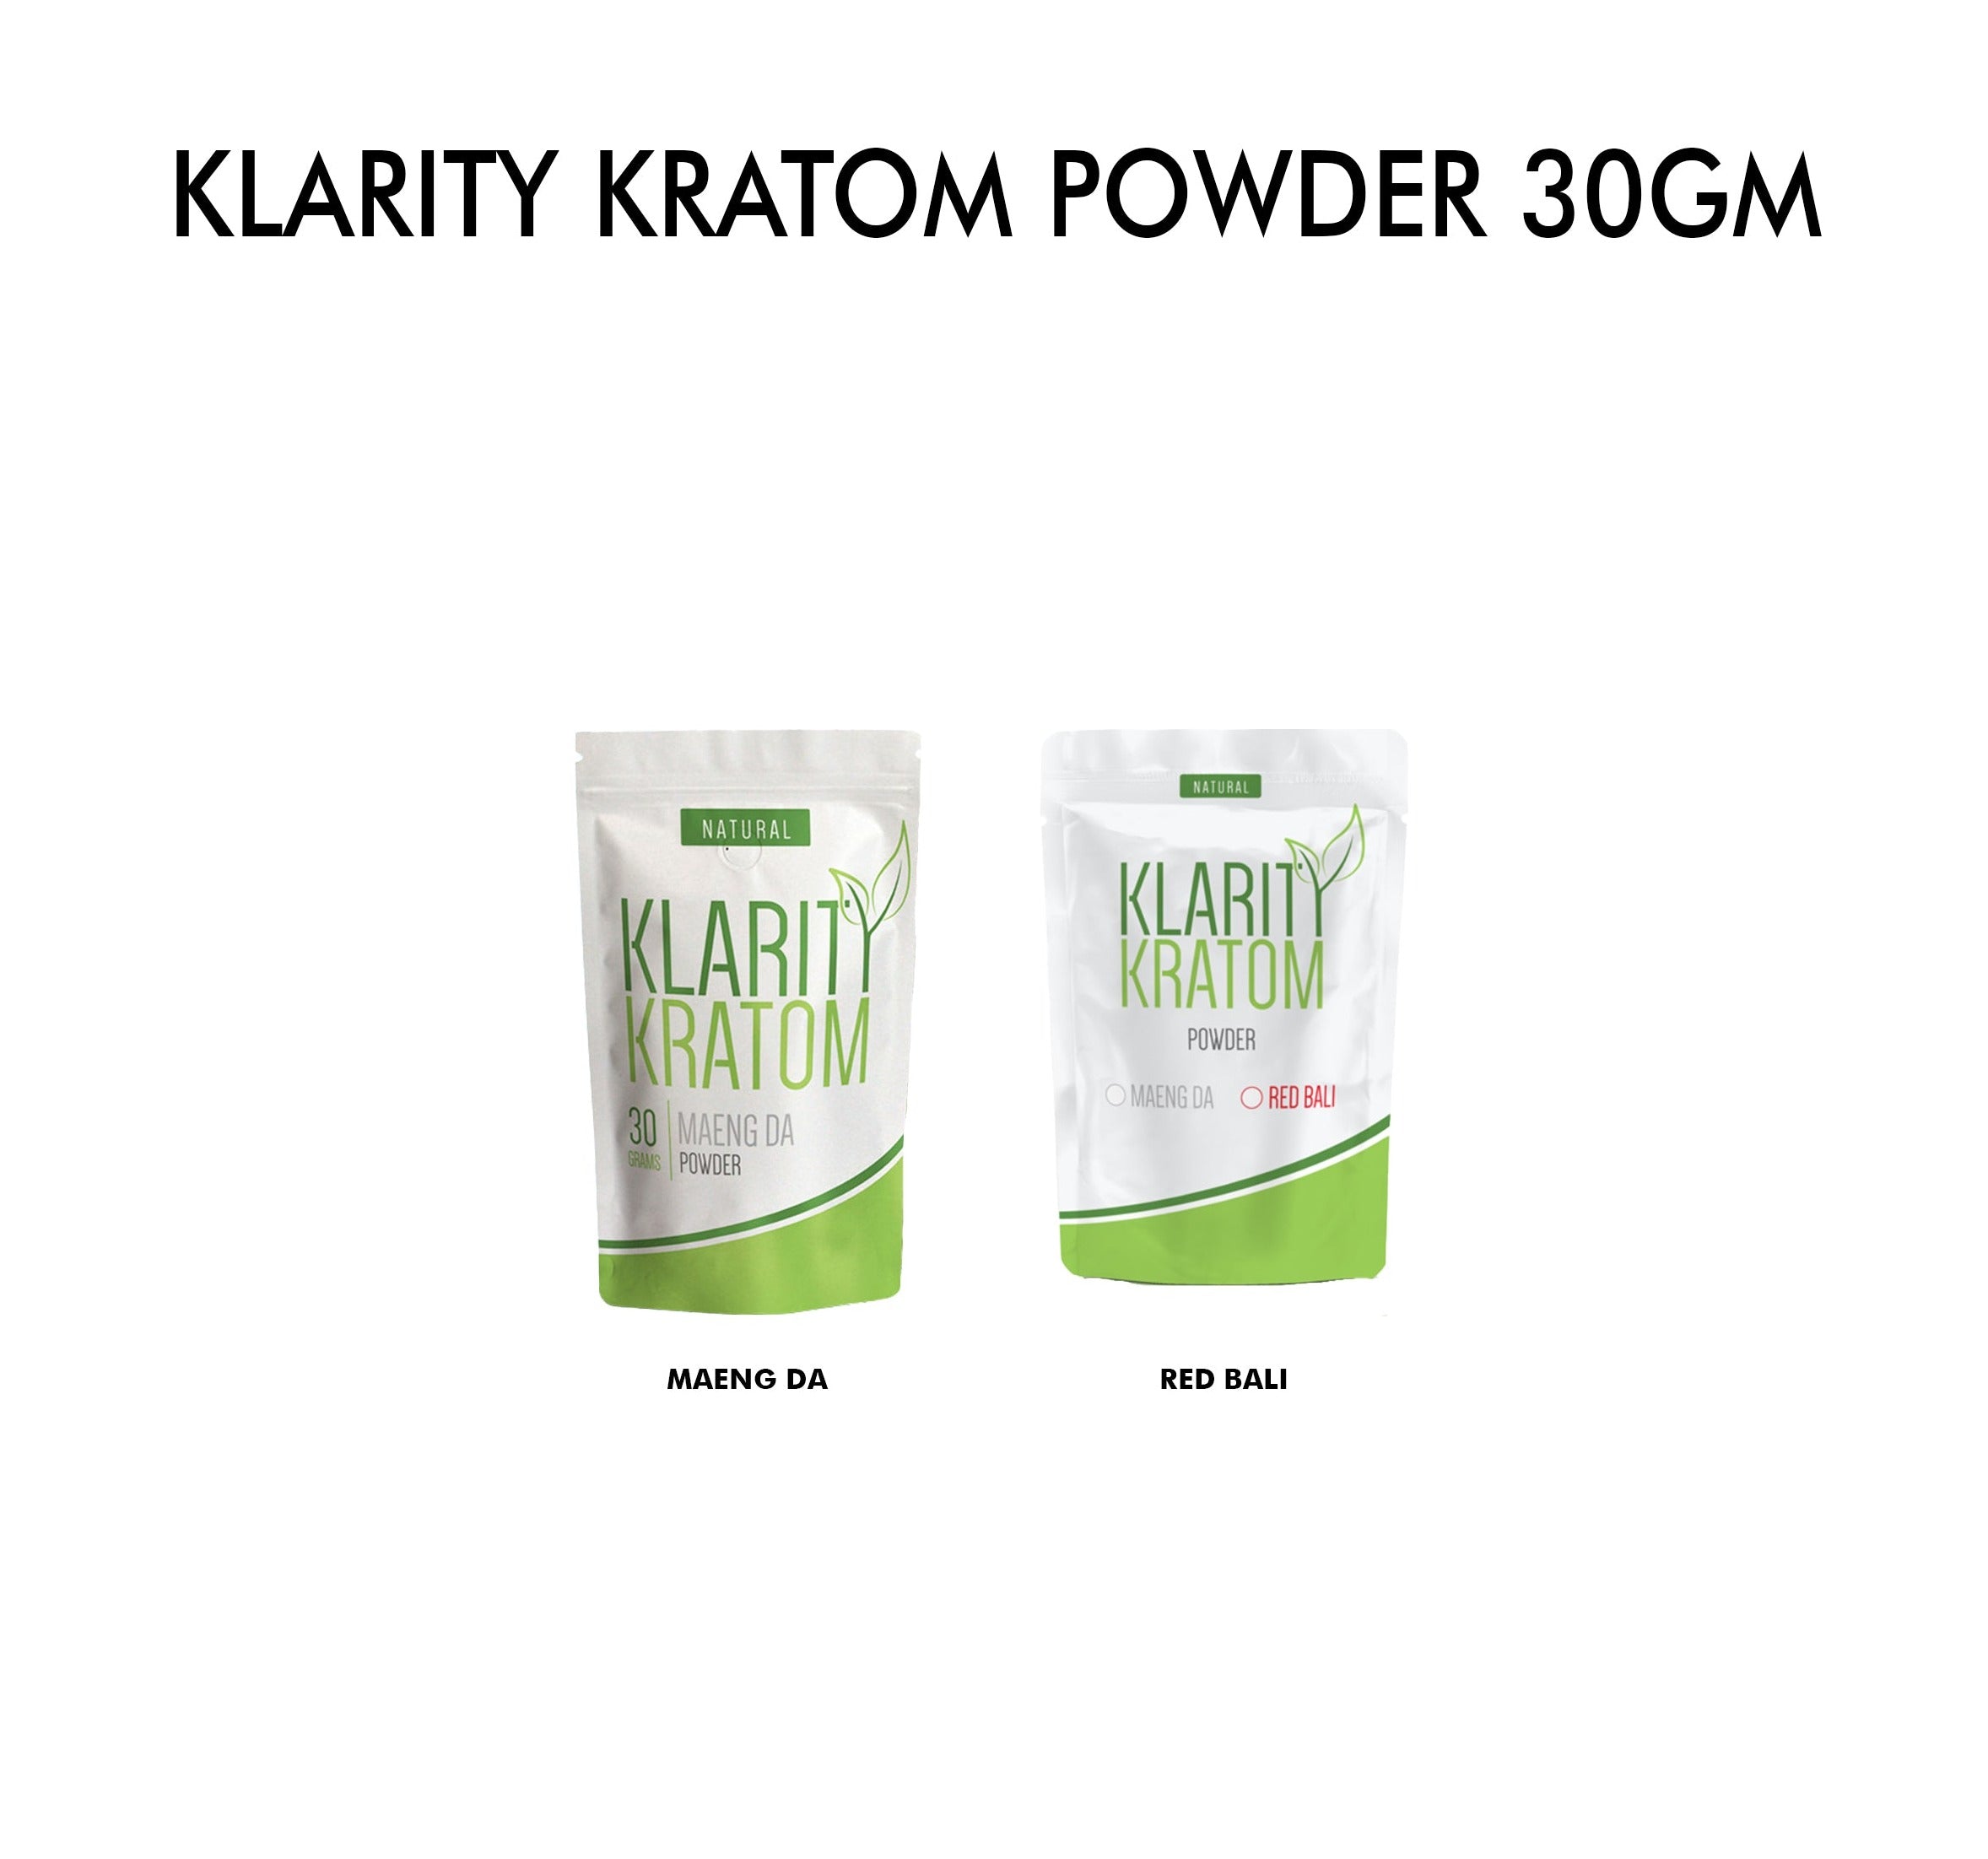 Klarity Kratom Powder 30gm